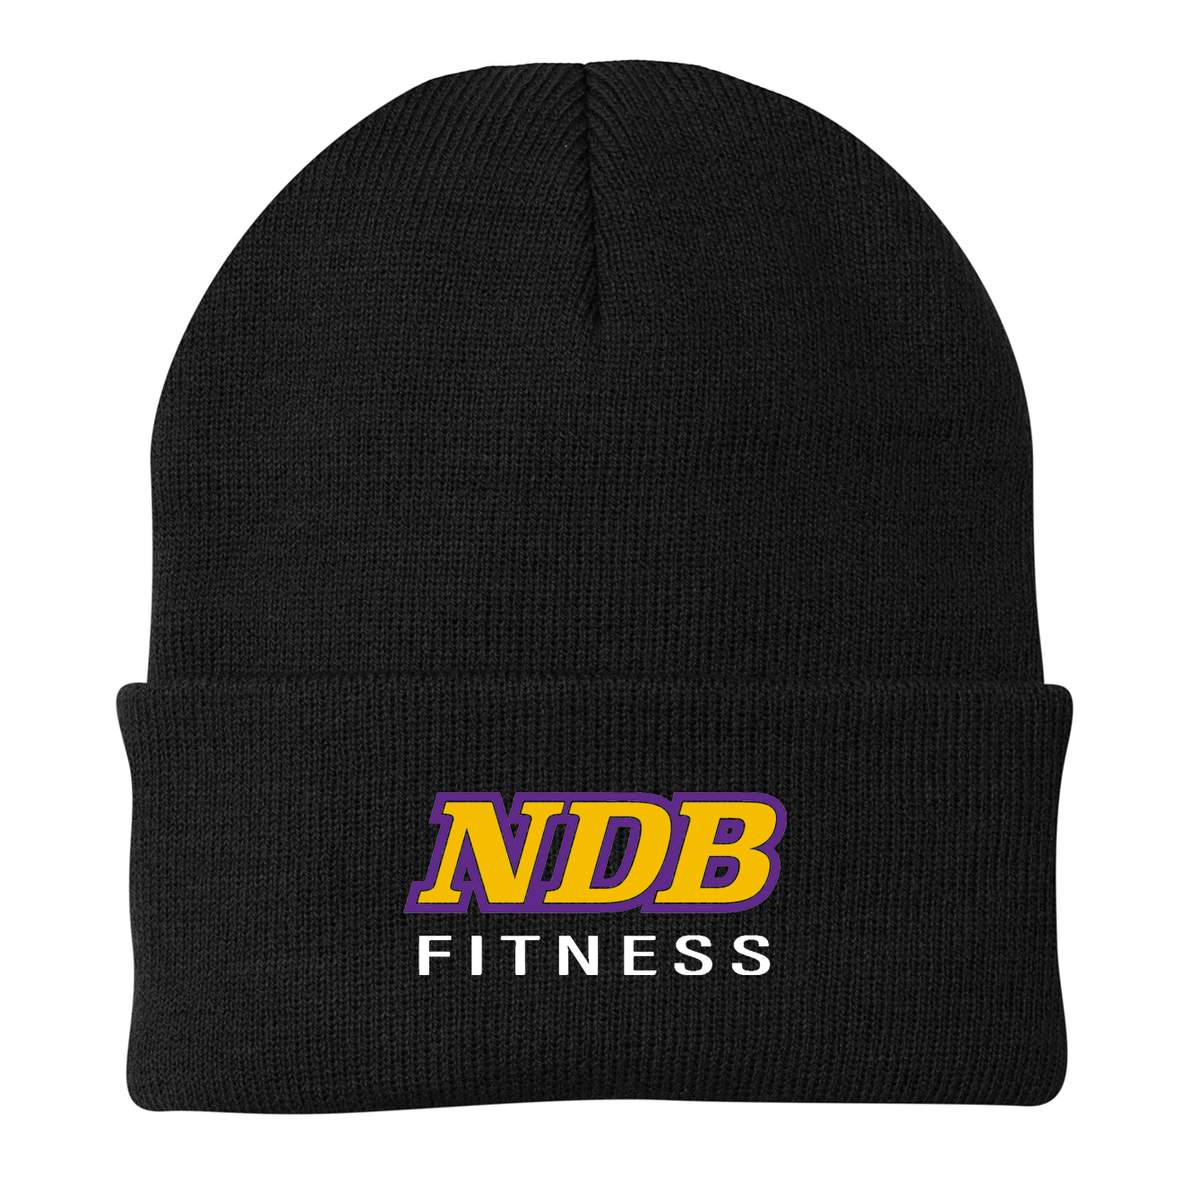 NDB Fitness Knit Beanie